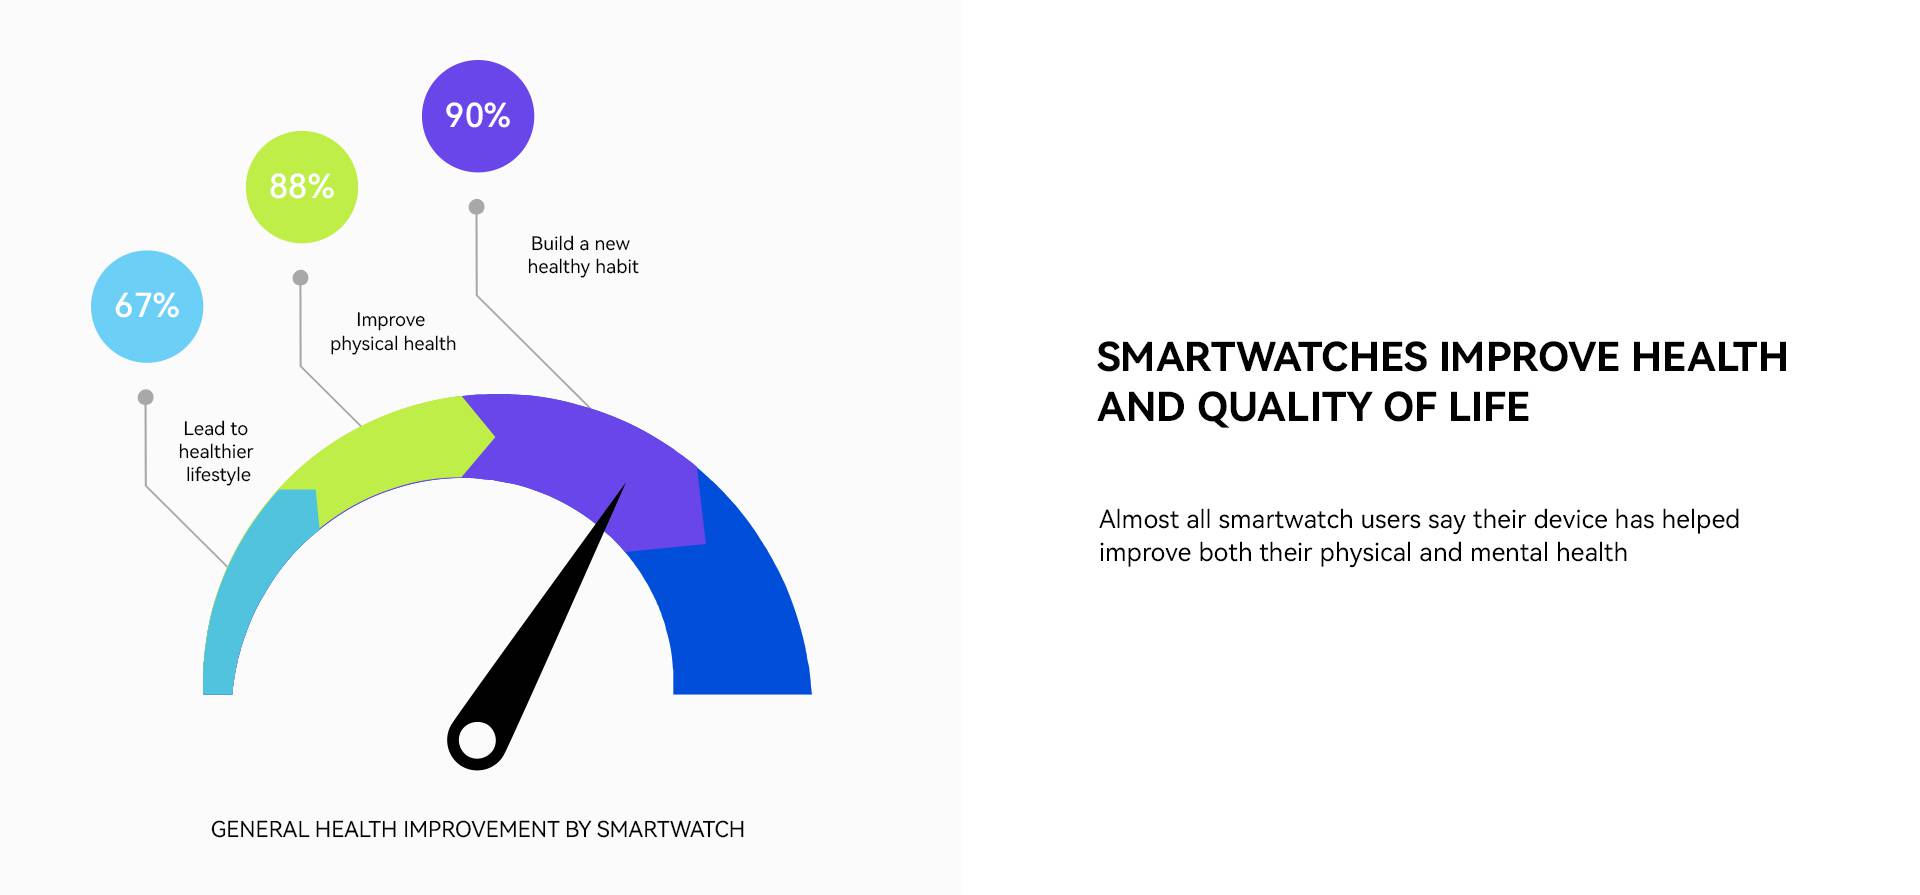 Istraživanje pokazalo da je 87% korisnika pametnih satova ima zdravije životne navike